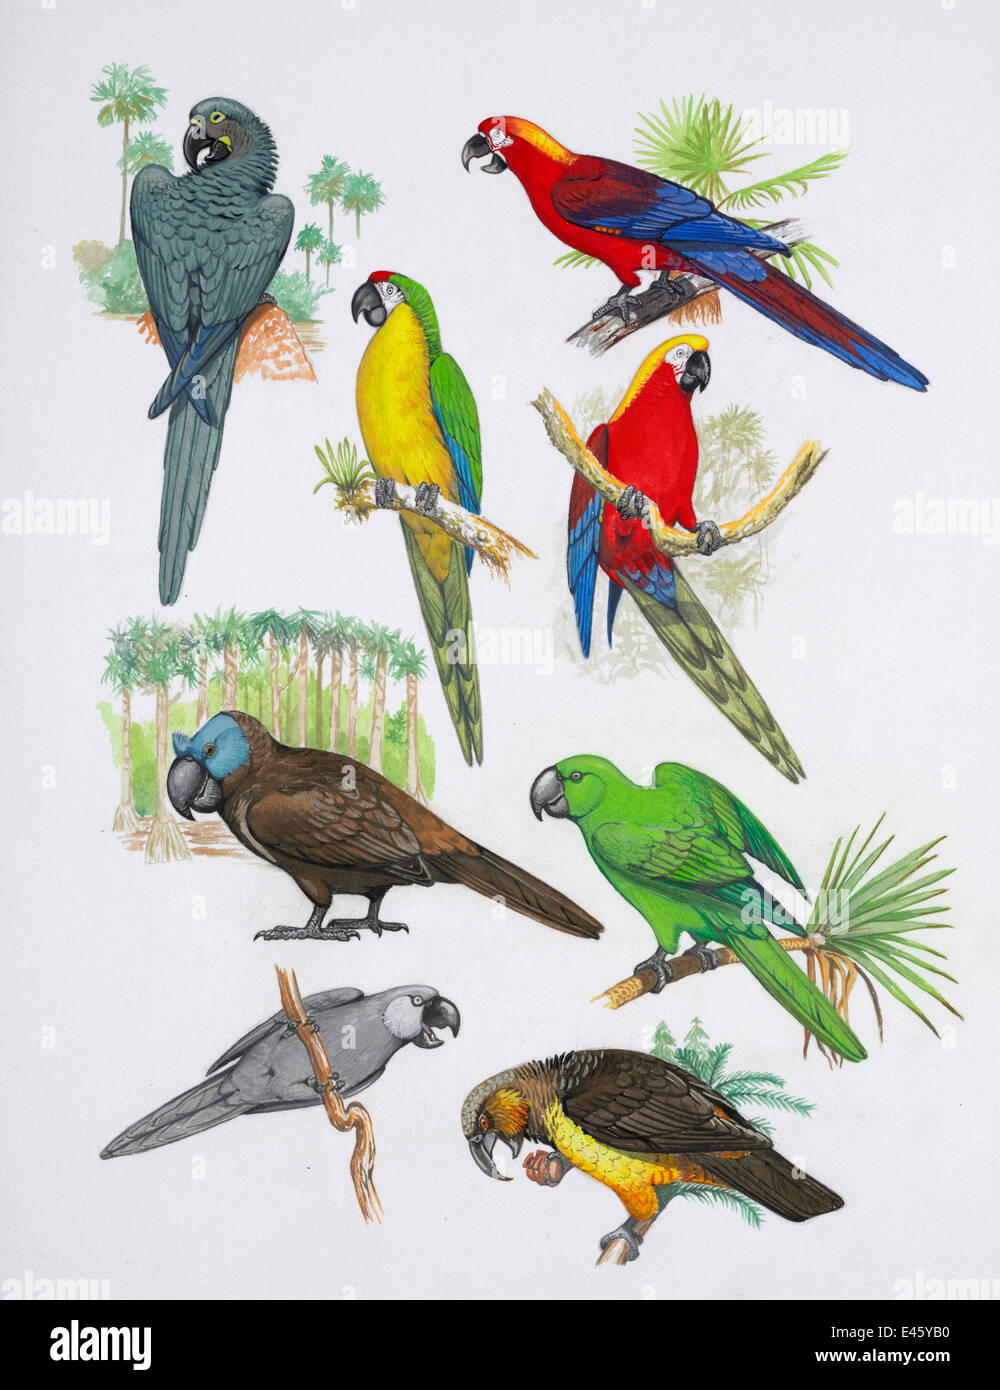 Illustrazione dei pappagalli estinti. In senso orario da in alto a destra: rosso cubano macaw (Ara tricolore) - estinta 1864, Cuba, West Indies; Jamaican red macaw (Ara gossei) - estinta 1765, Giamaica, West Indies; Rodrigues parrot (Necropsittacus rodericanus) - estinta 1762 Foto Stock